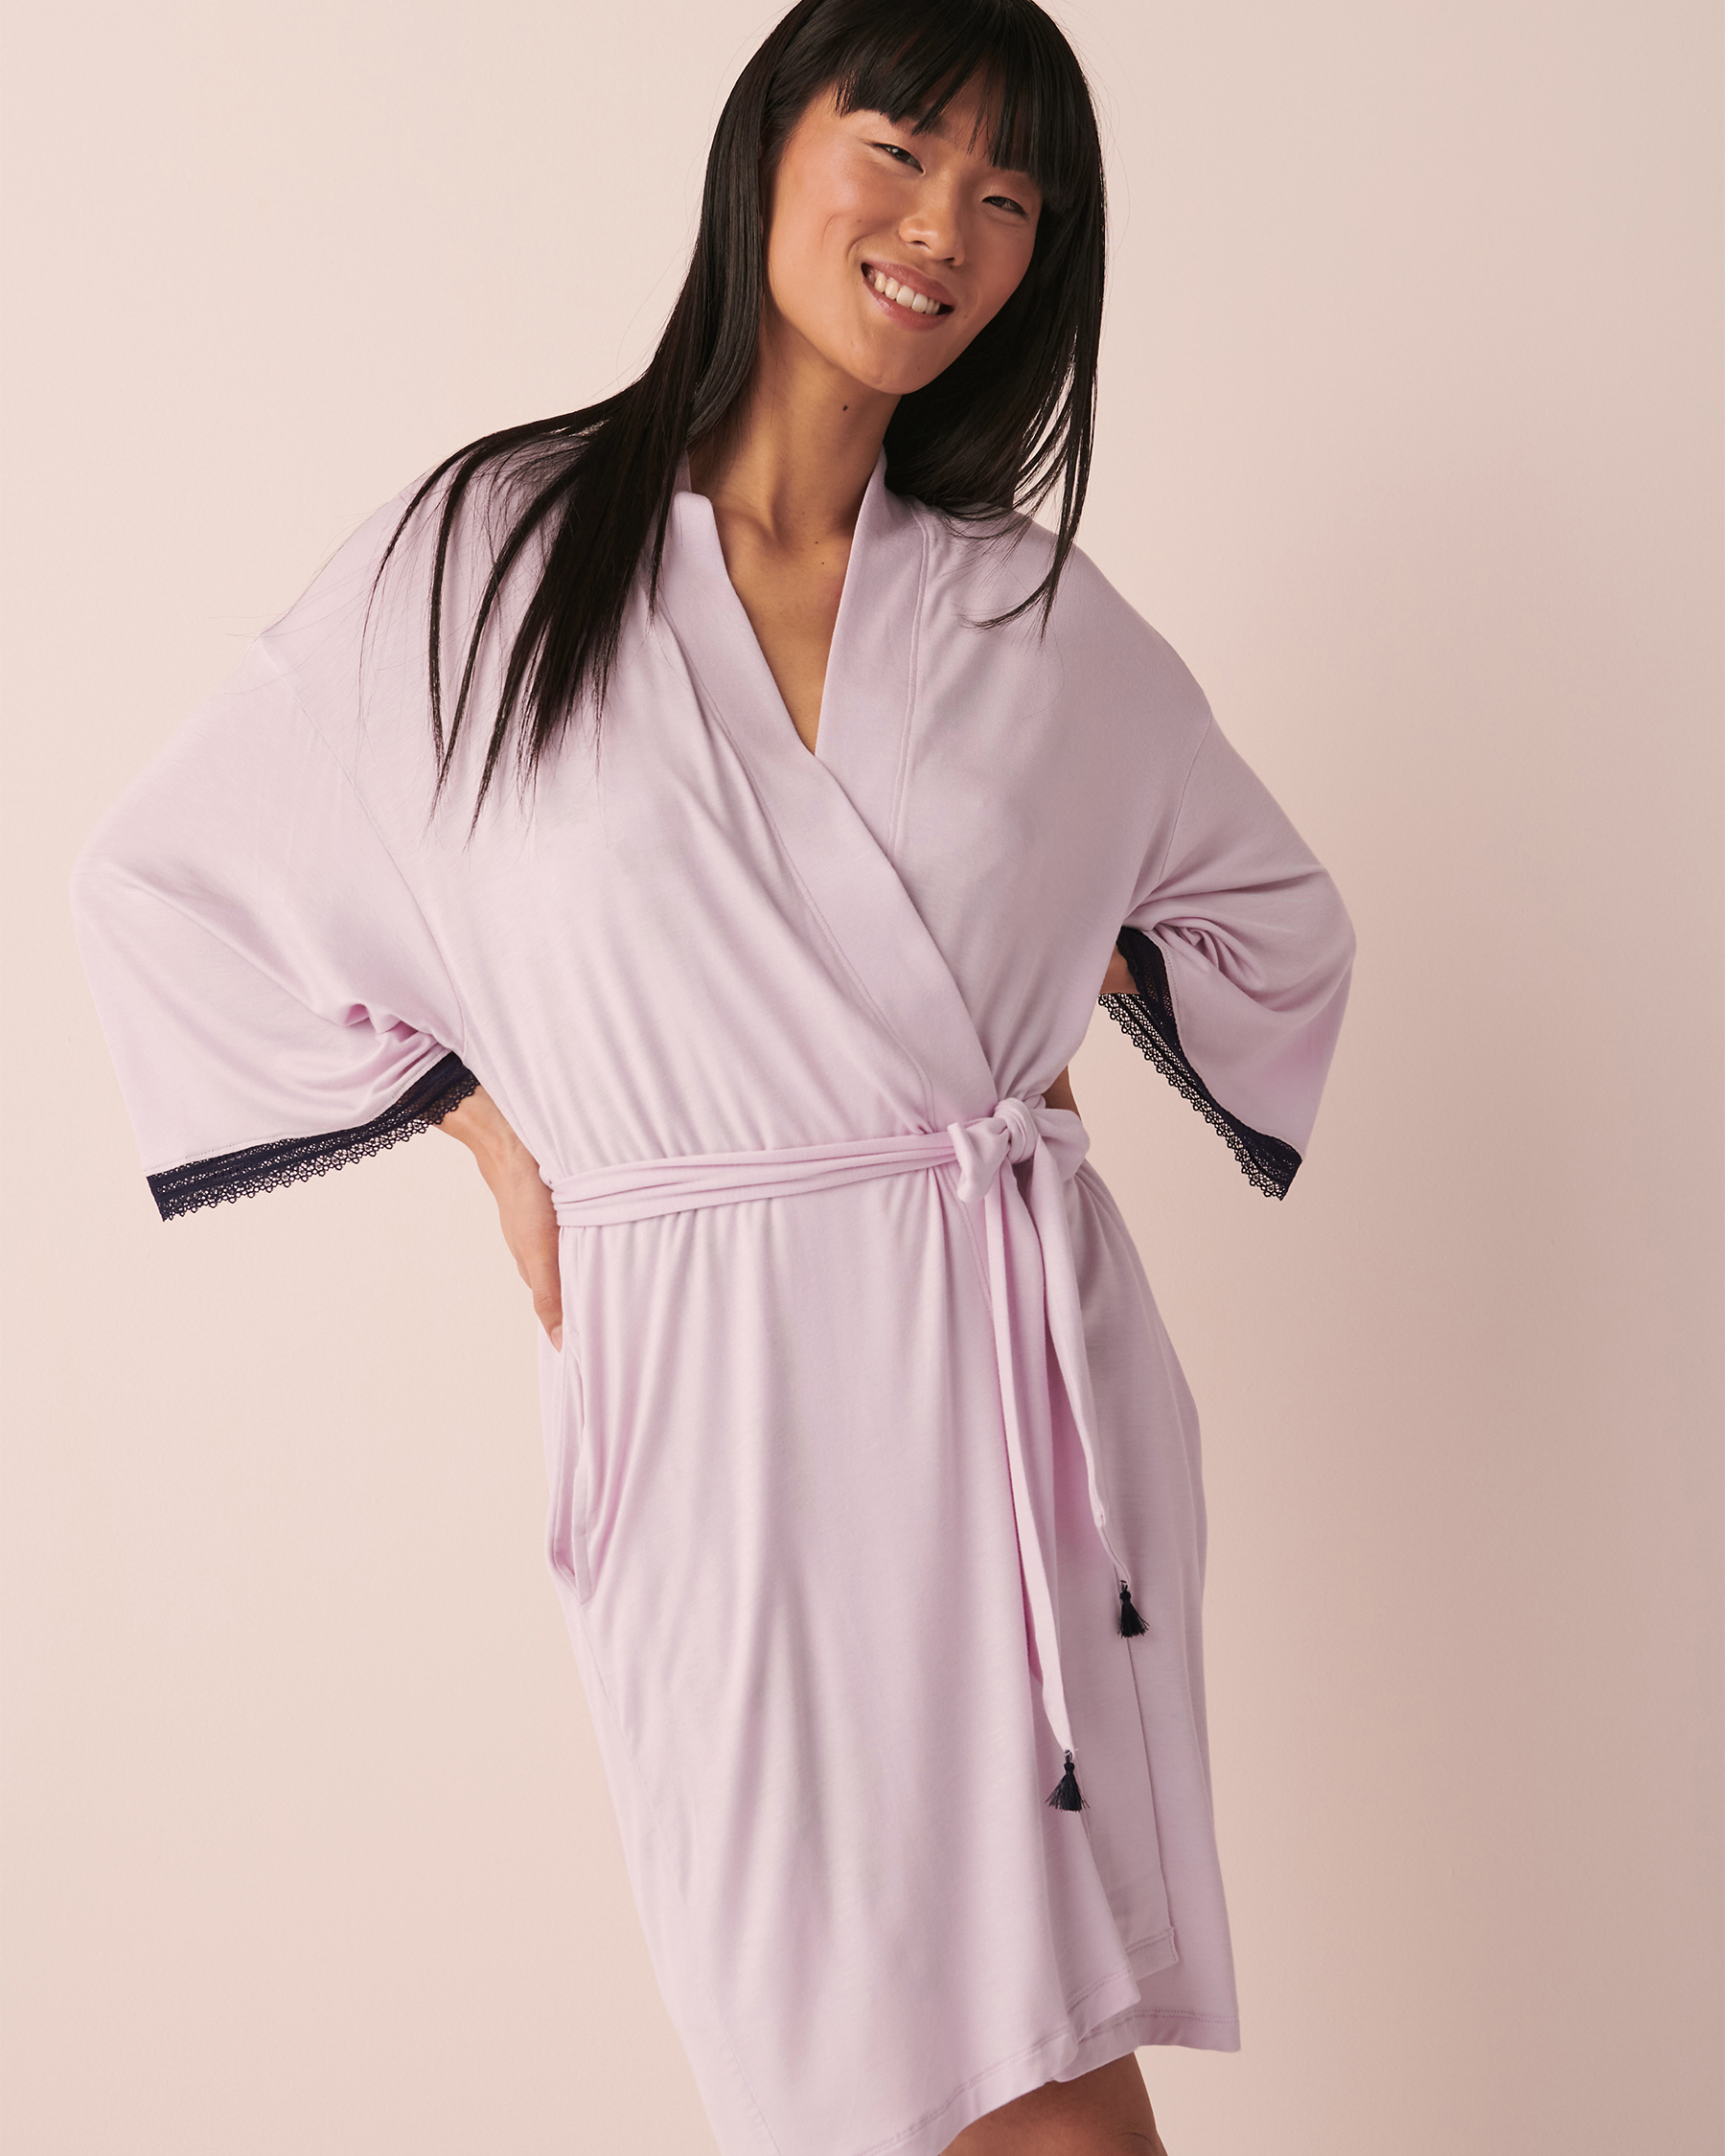 La Vie en Rose Soft Jersey Lace Trim Kimono. 4